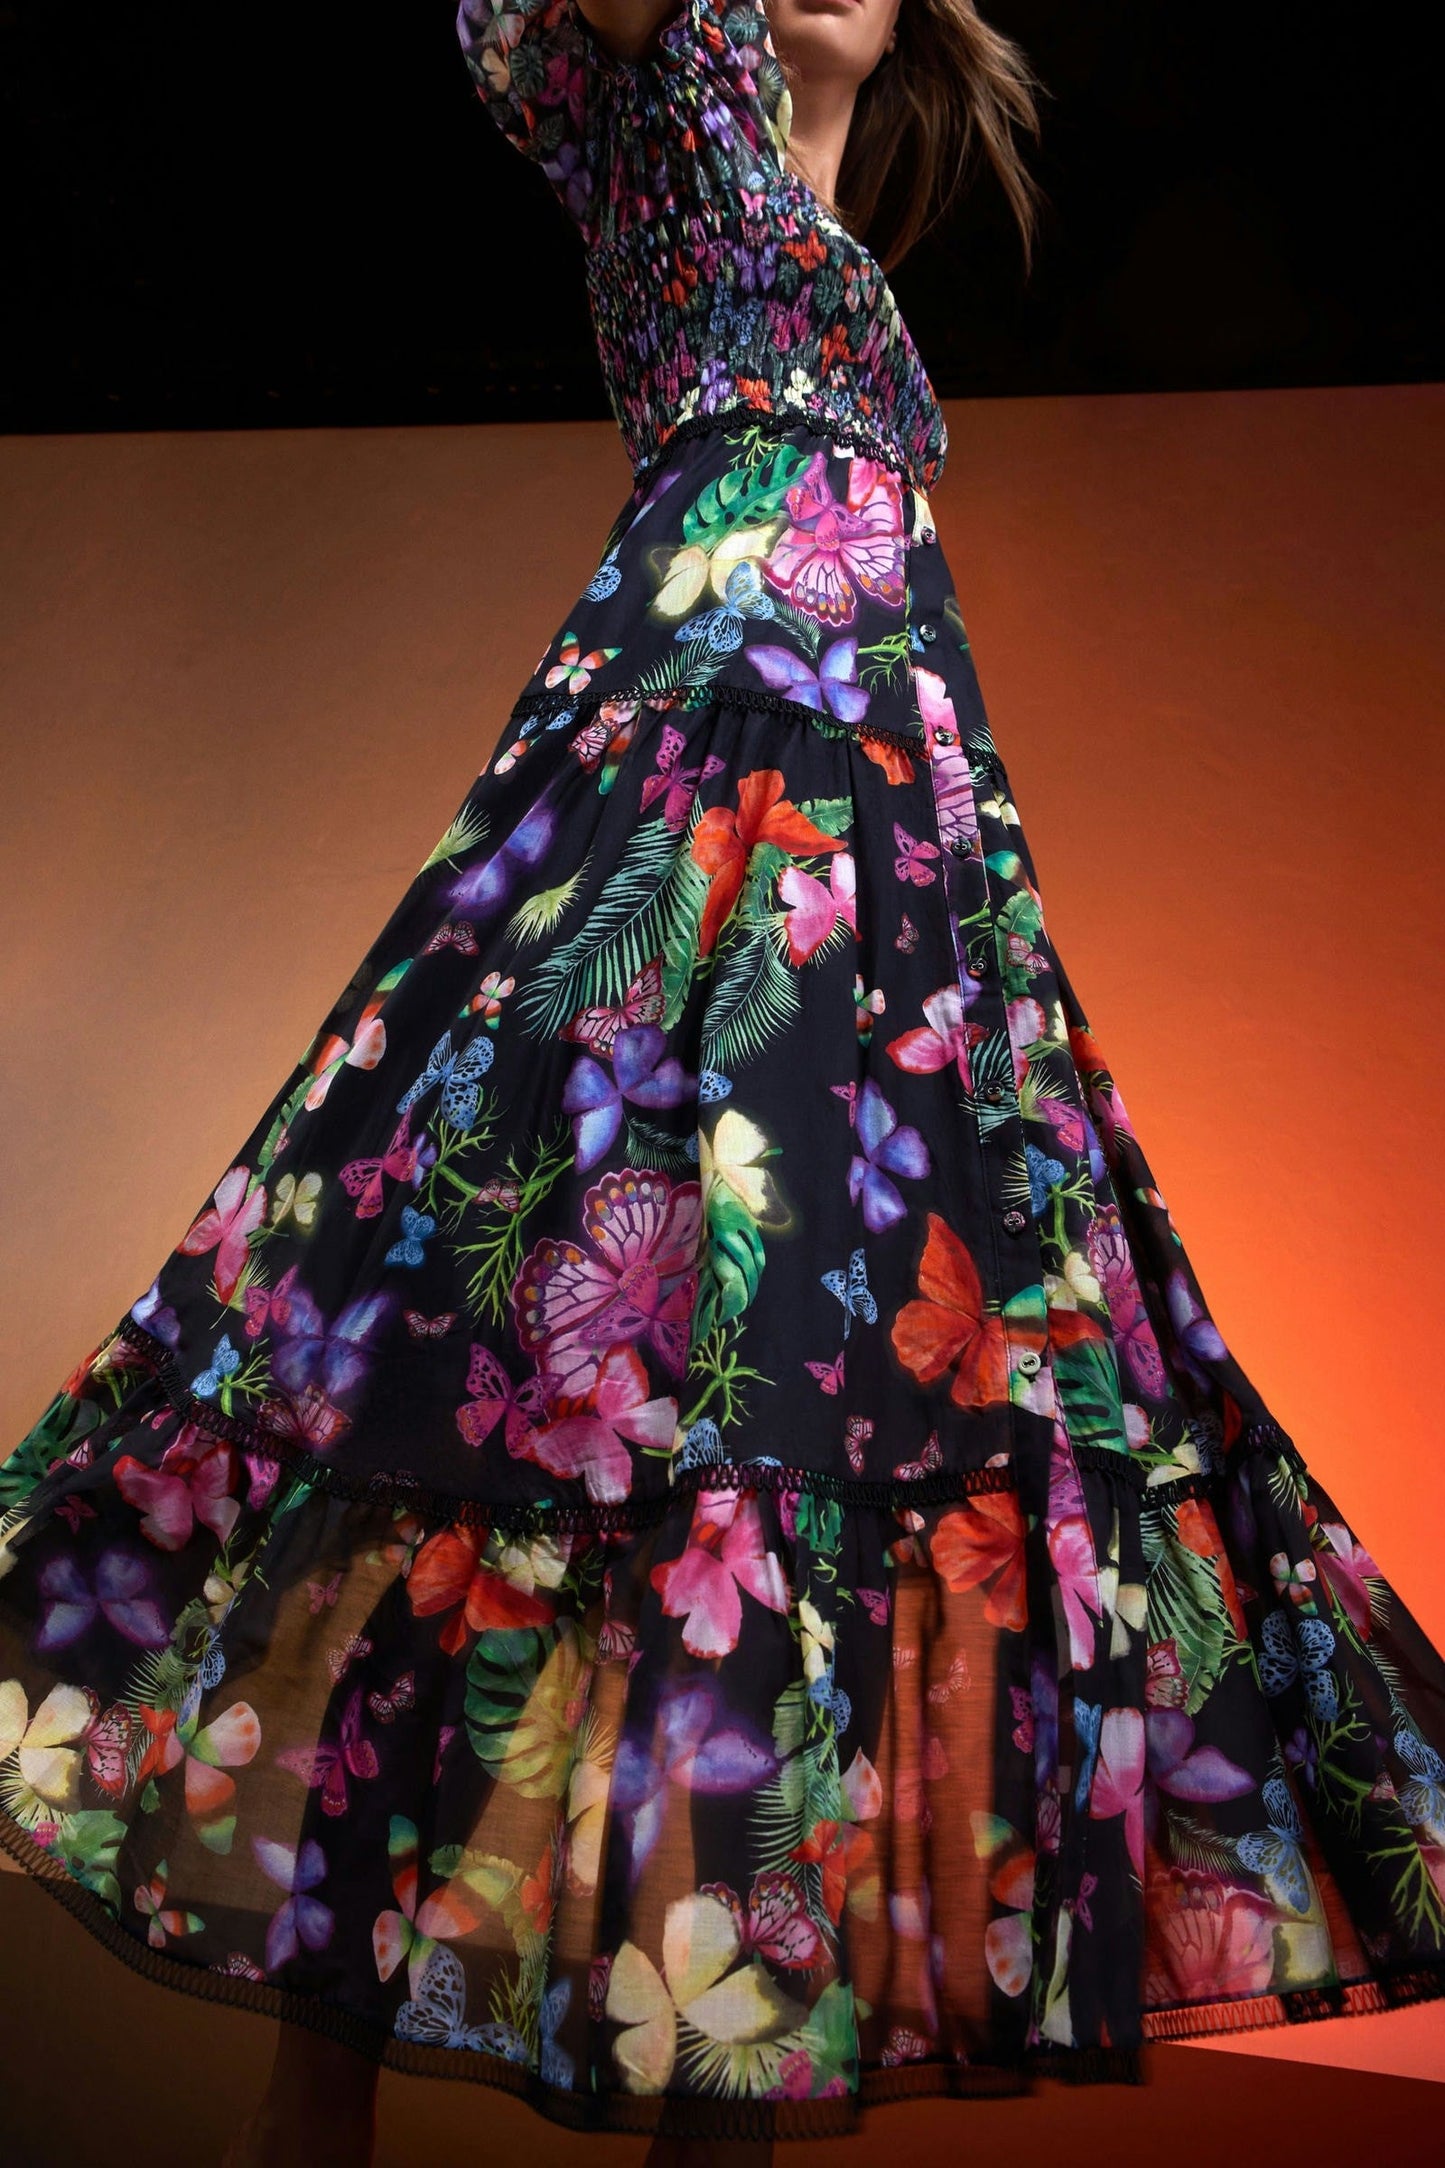 Charo Salva Long Dress - Premium Long Dresses from Marina St Barth - Just $679! Shop now at Marina St Barth